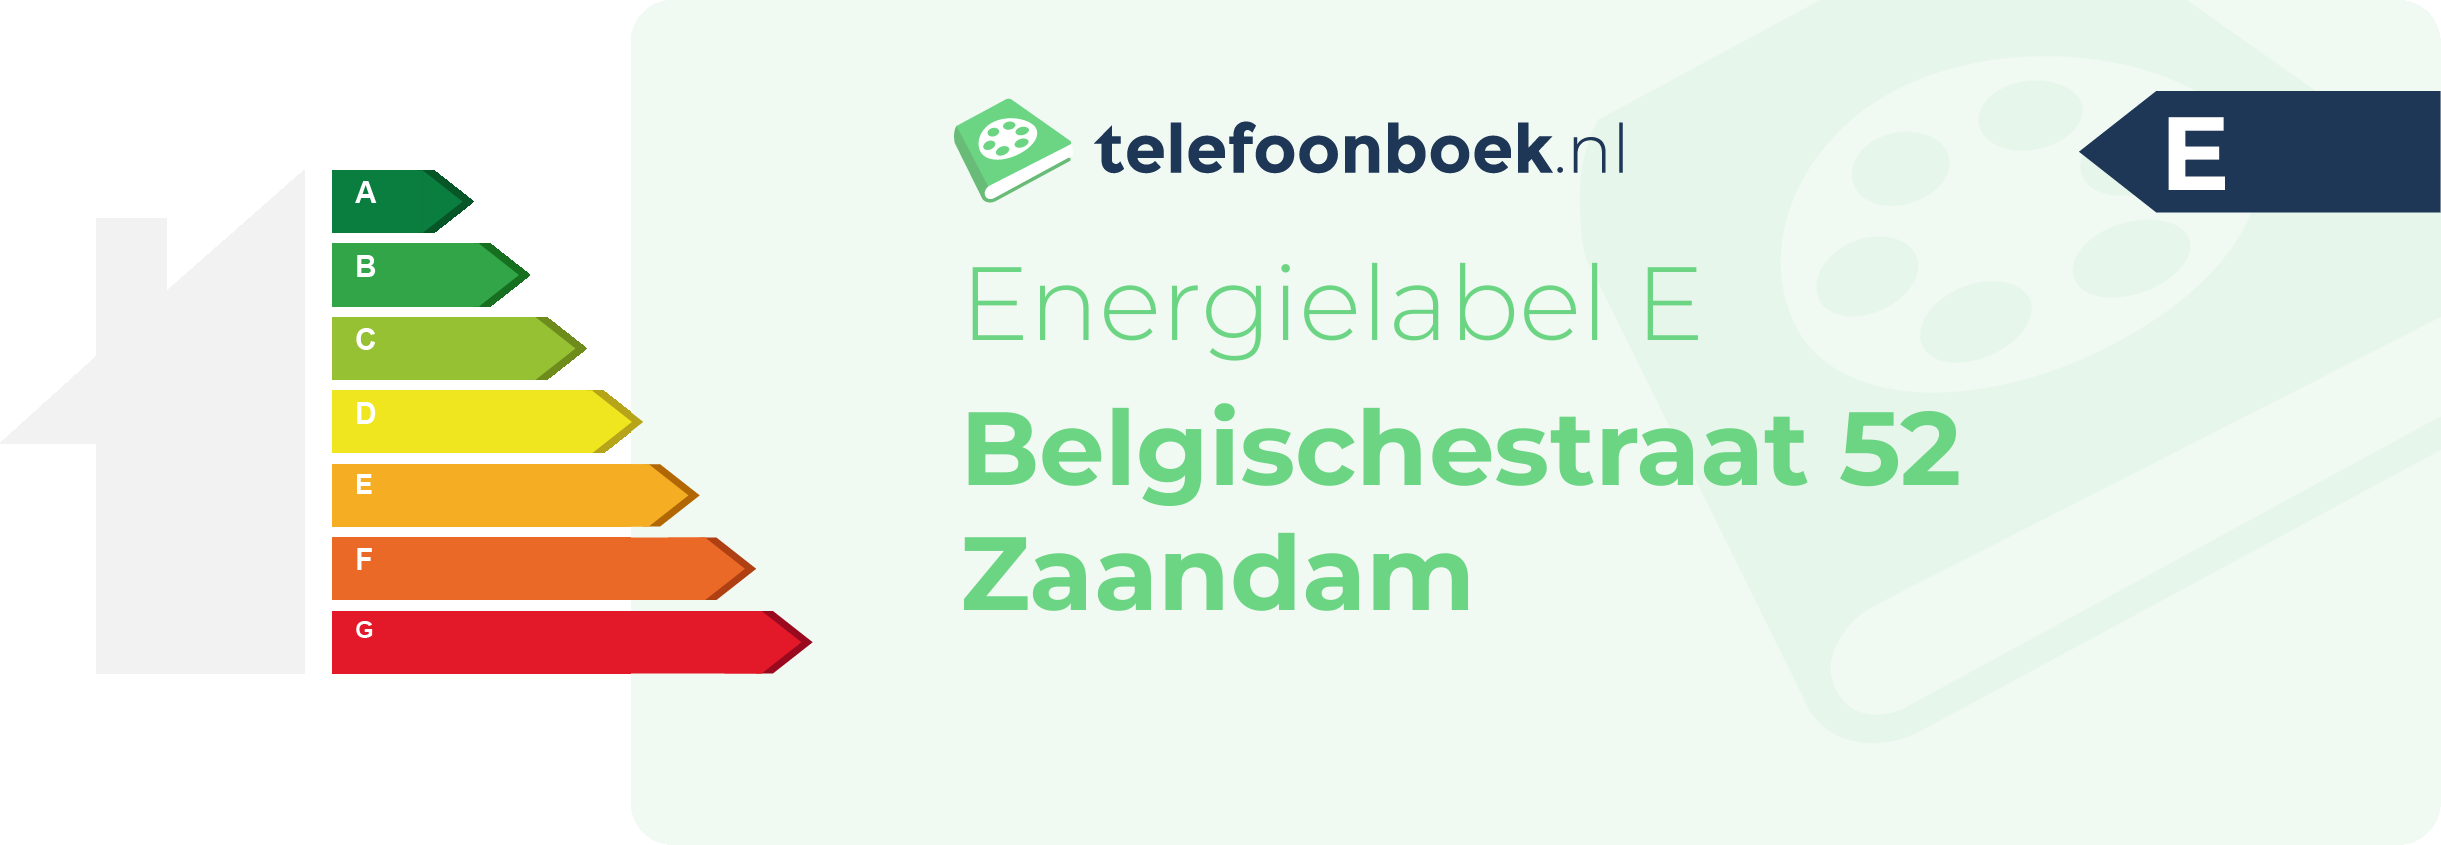 Energielabel Belgischestraat 52 Zaandam